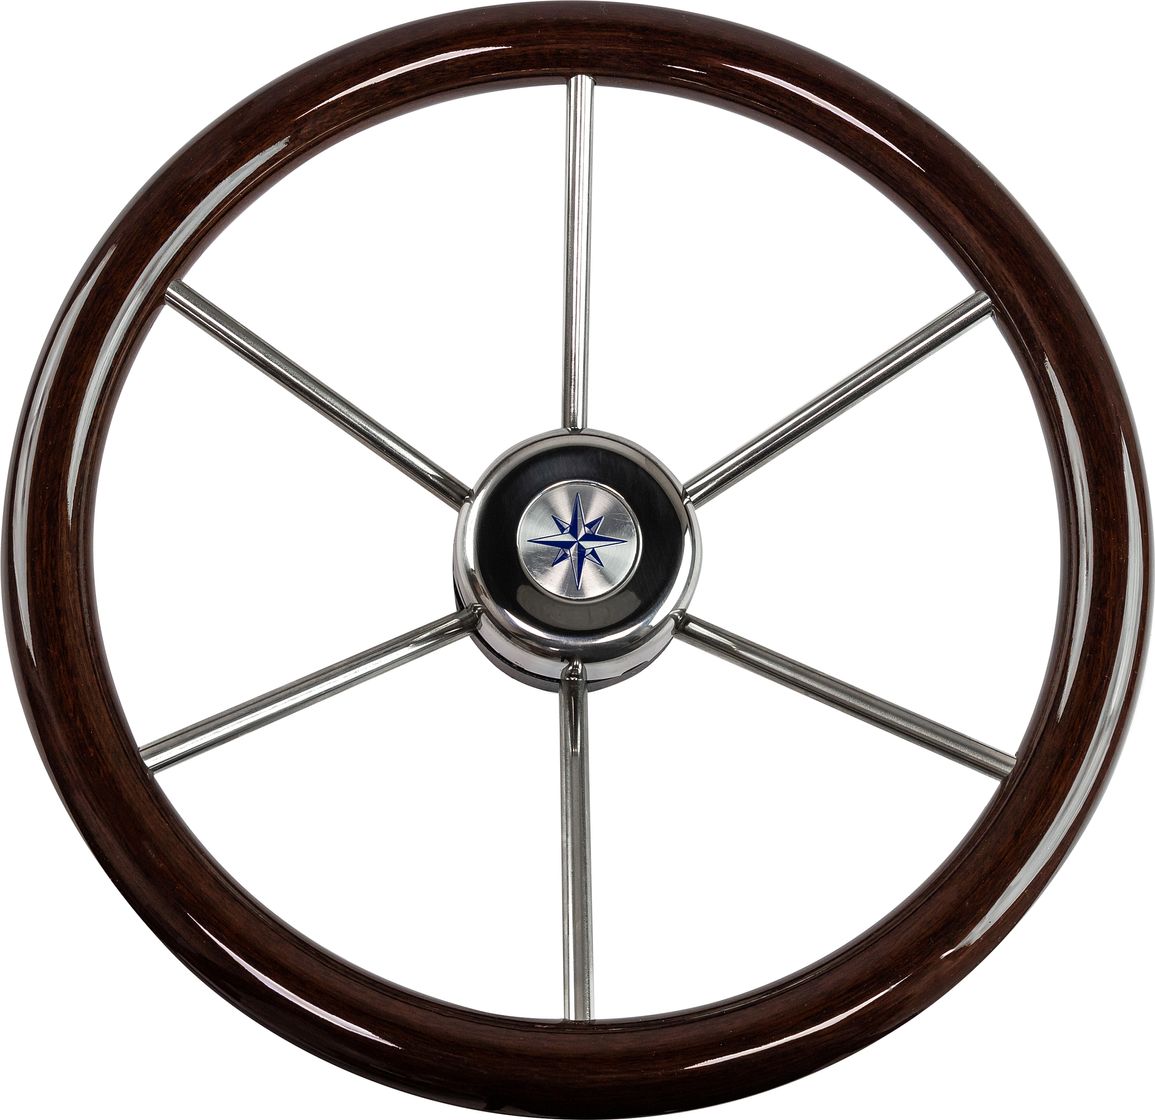 Рулевое колесо LEADER WOOD деревянный обод серебряные спицы д. 390 мм VN7390-33 keziah jones nigerian wood 1 cd